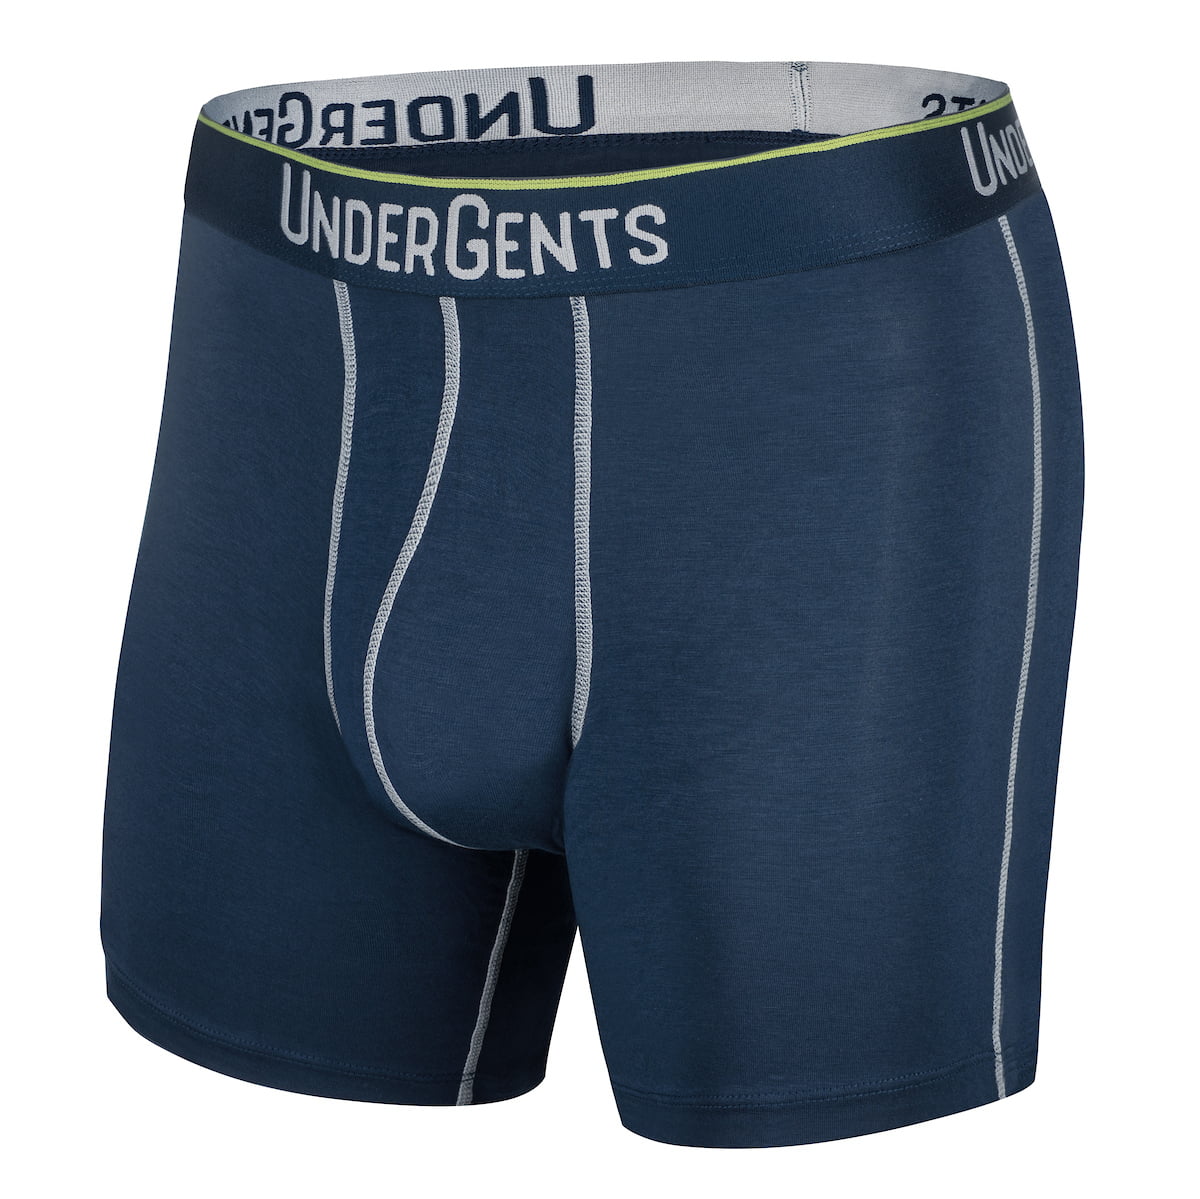 UnderGents - UnderGents Men's Boxer Brief Underwear/Underpants. 4.5 ...